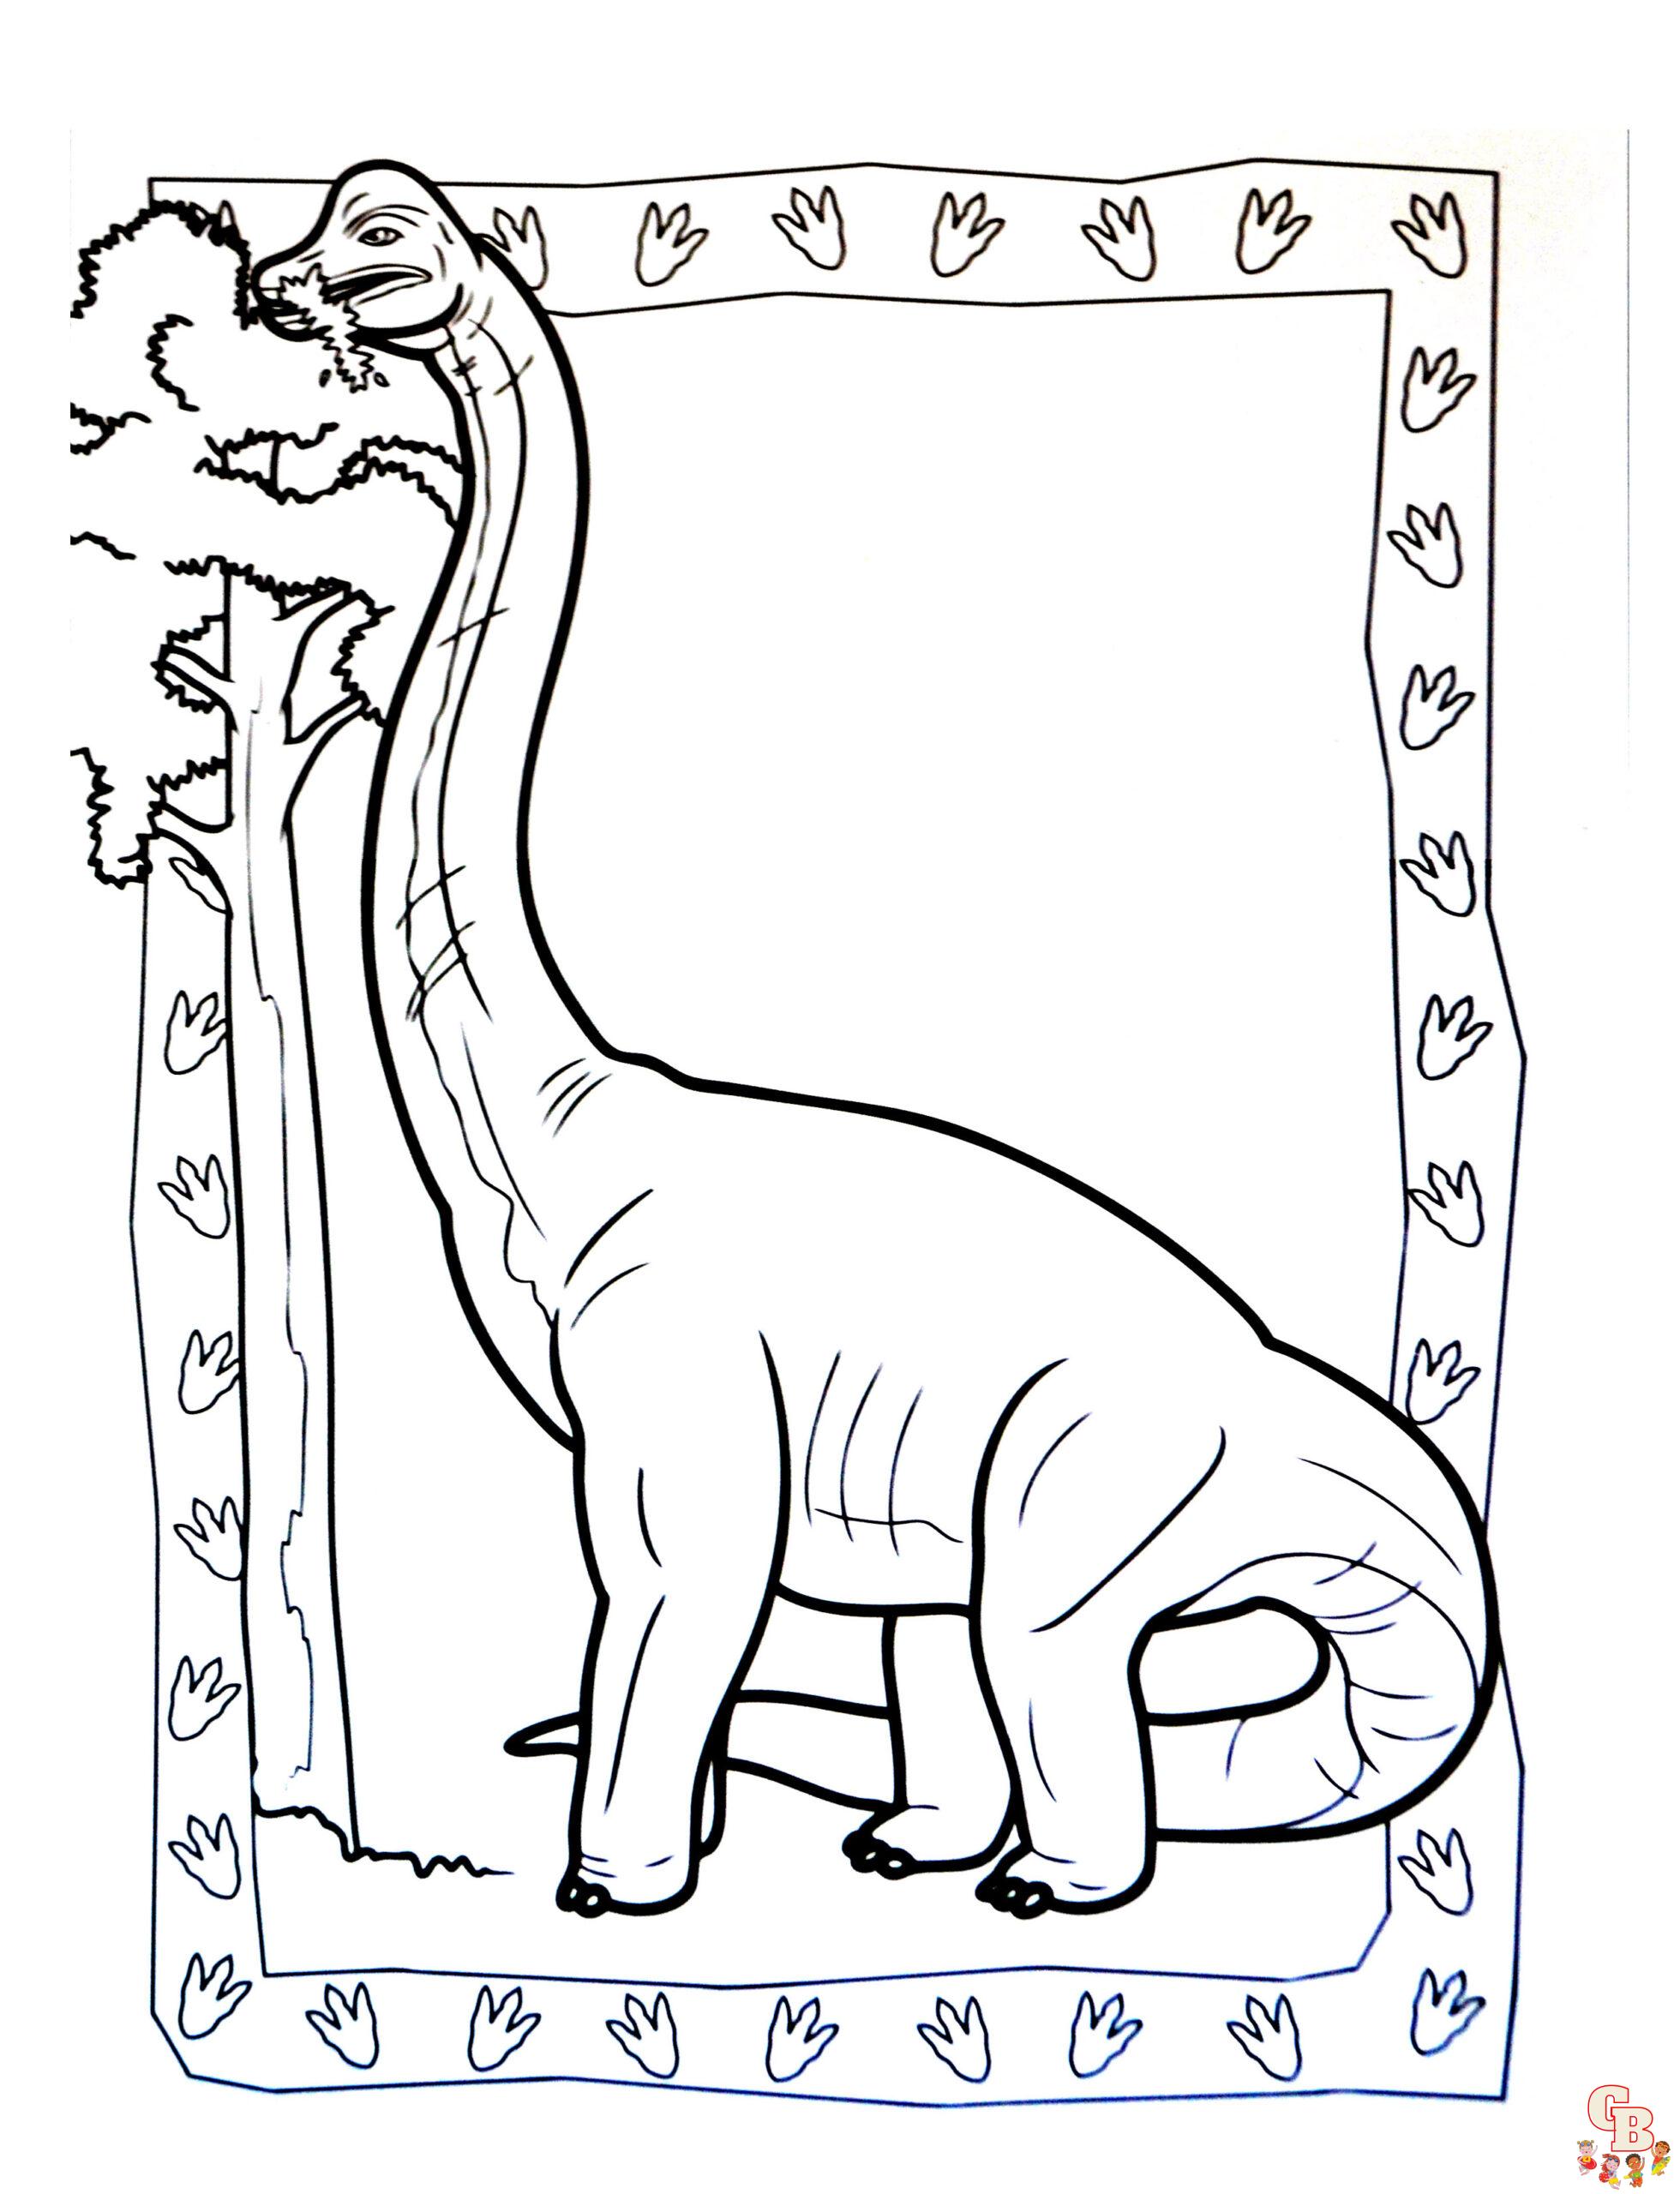 Brontosaurus ausmalbilder zum ausdrucken 2